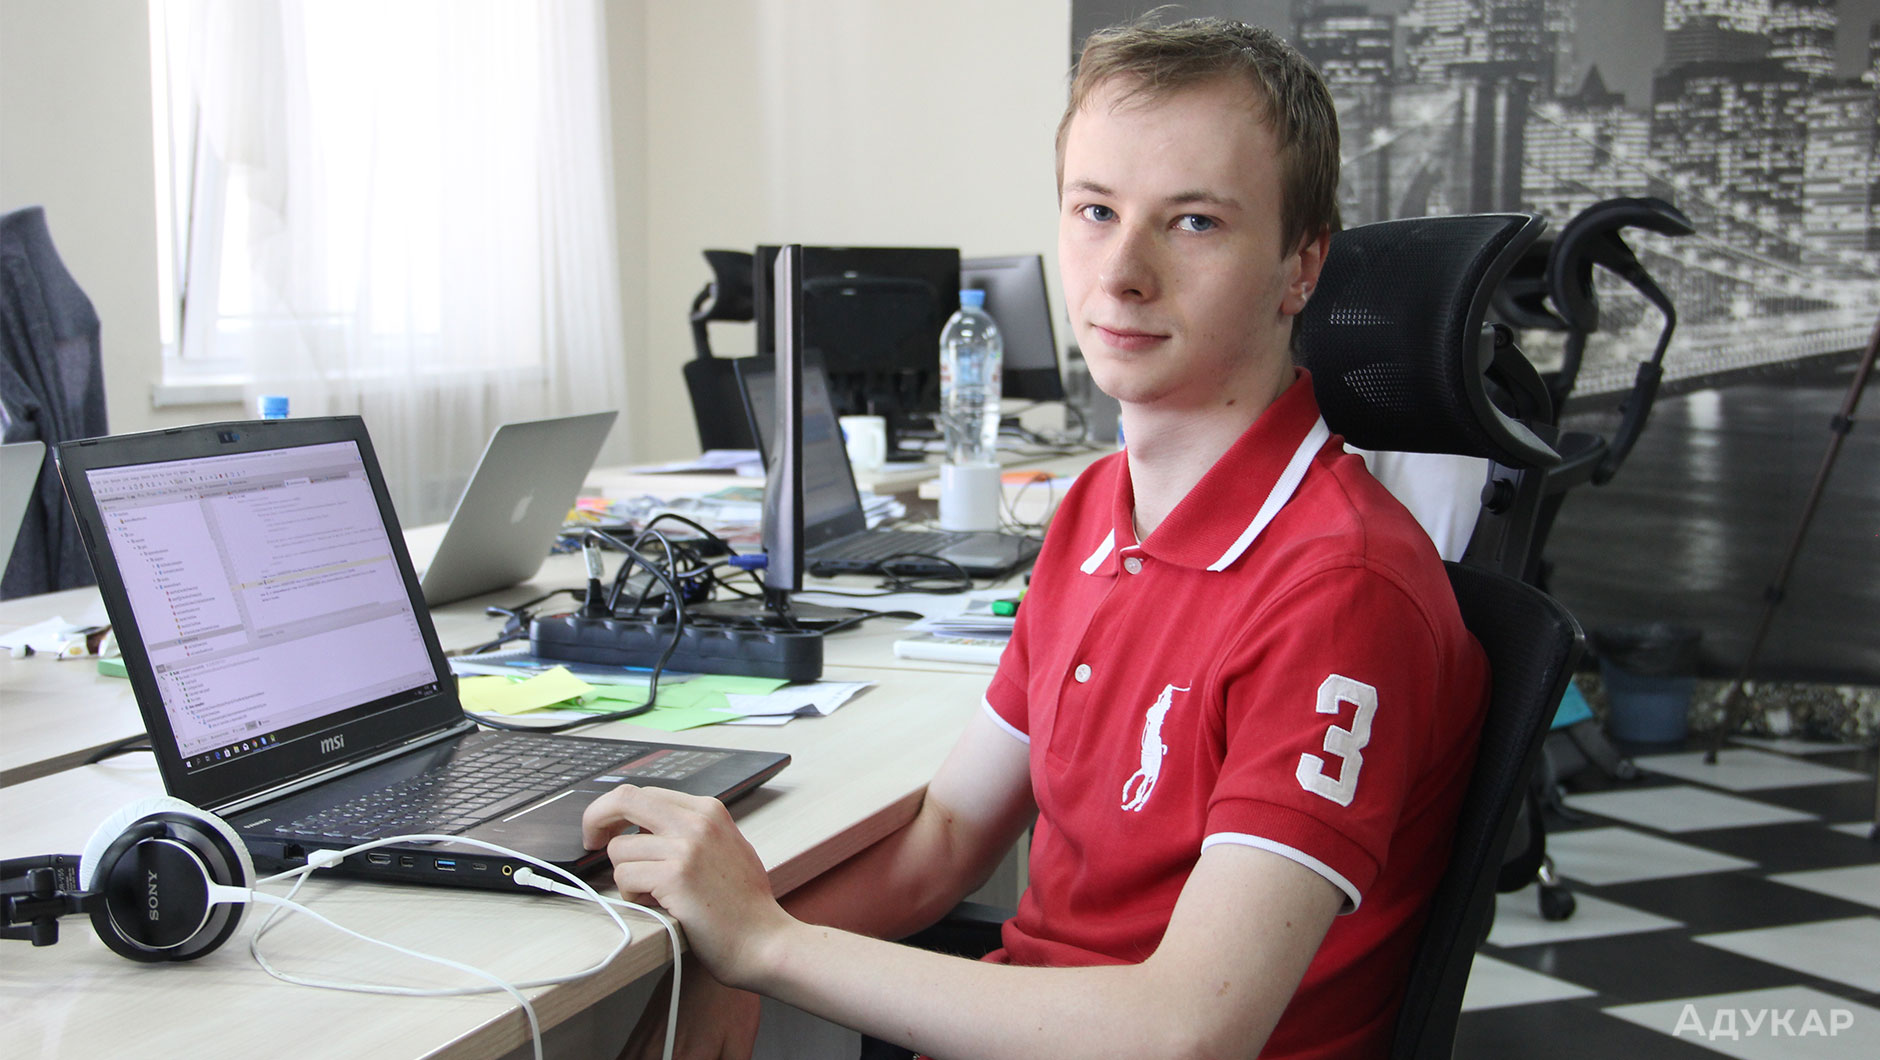 Владимир (Junior Mobile Developer) о том, что найти работу в IT не сложно, главное показать свои навыки